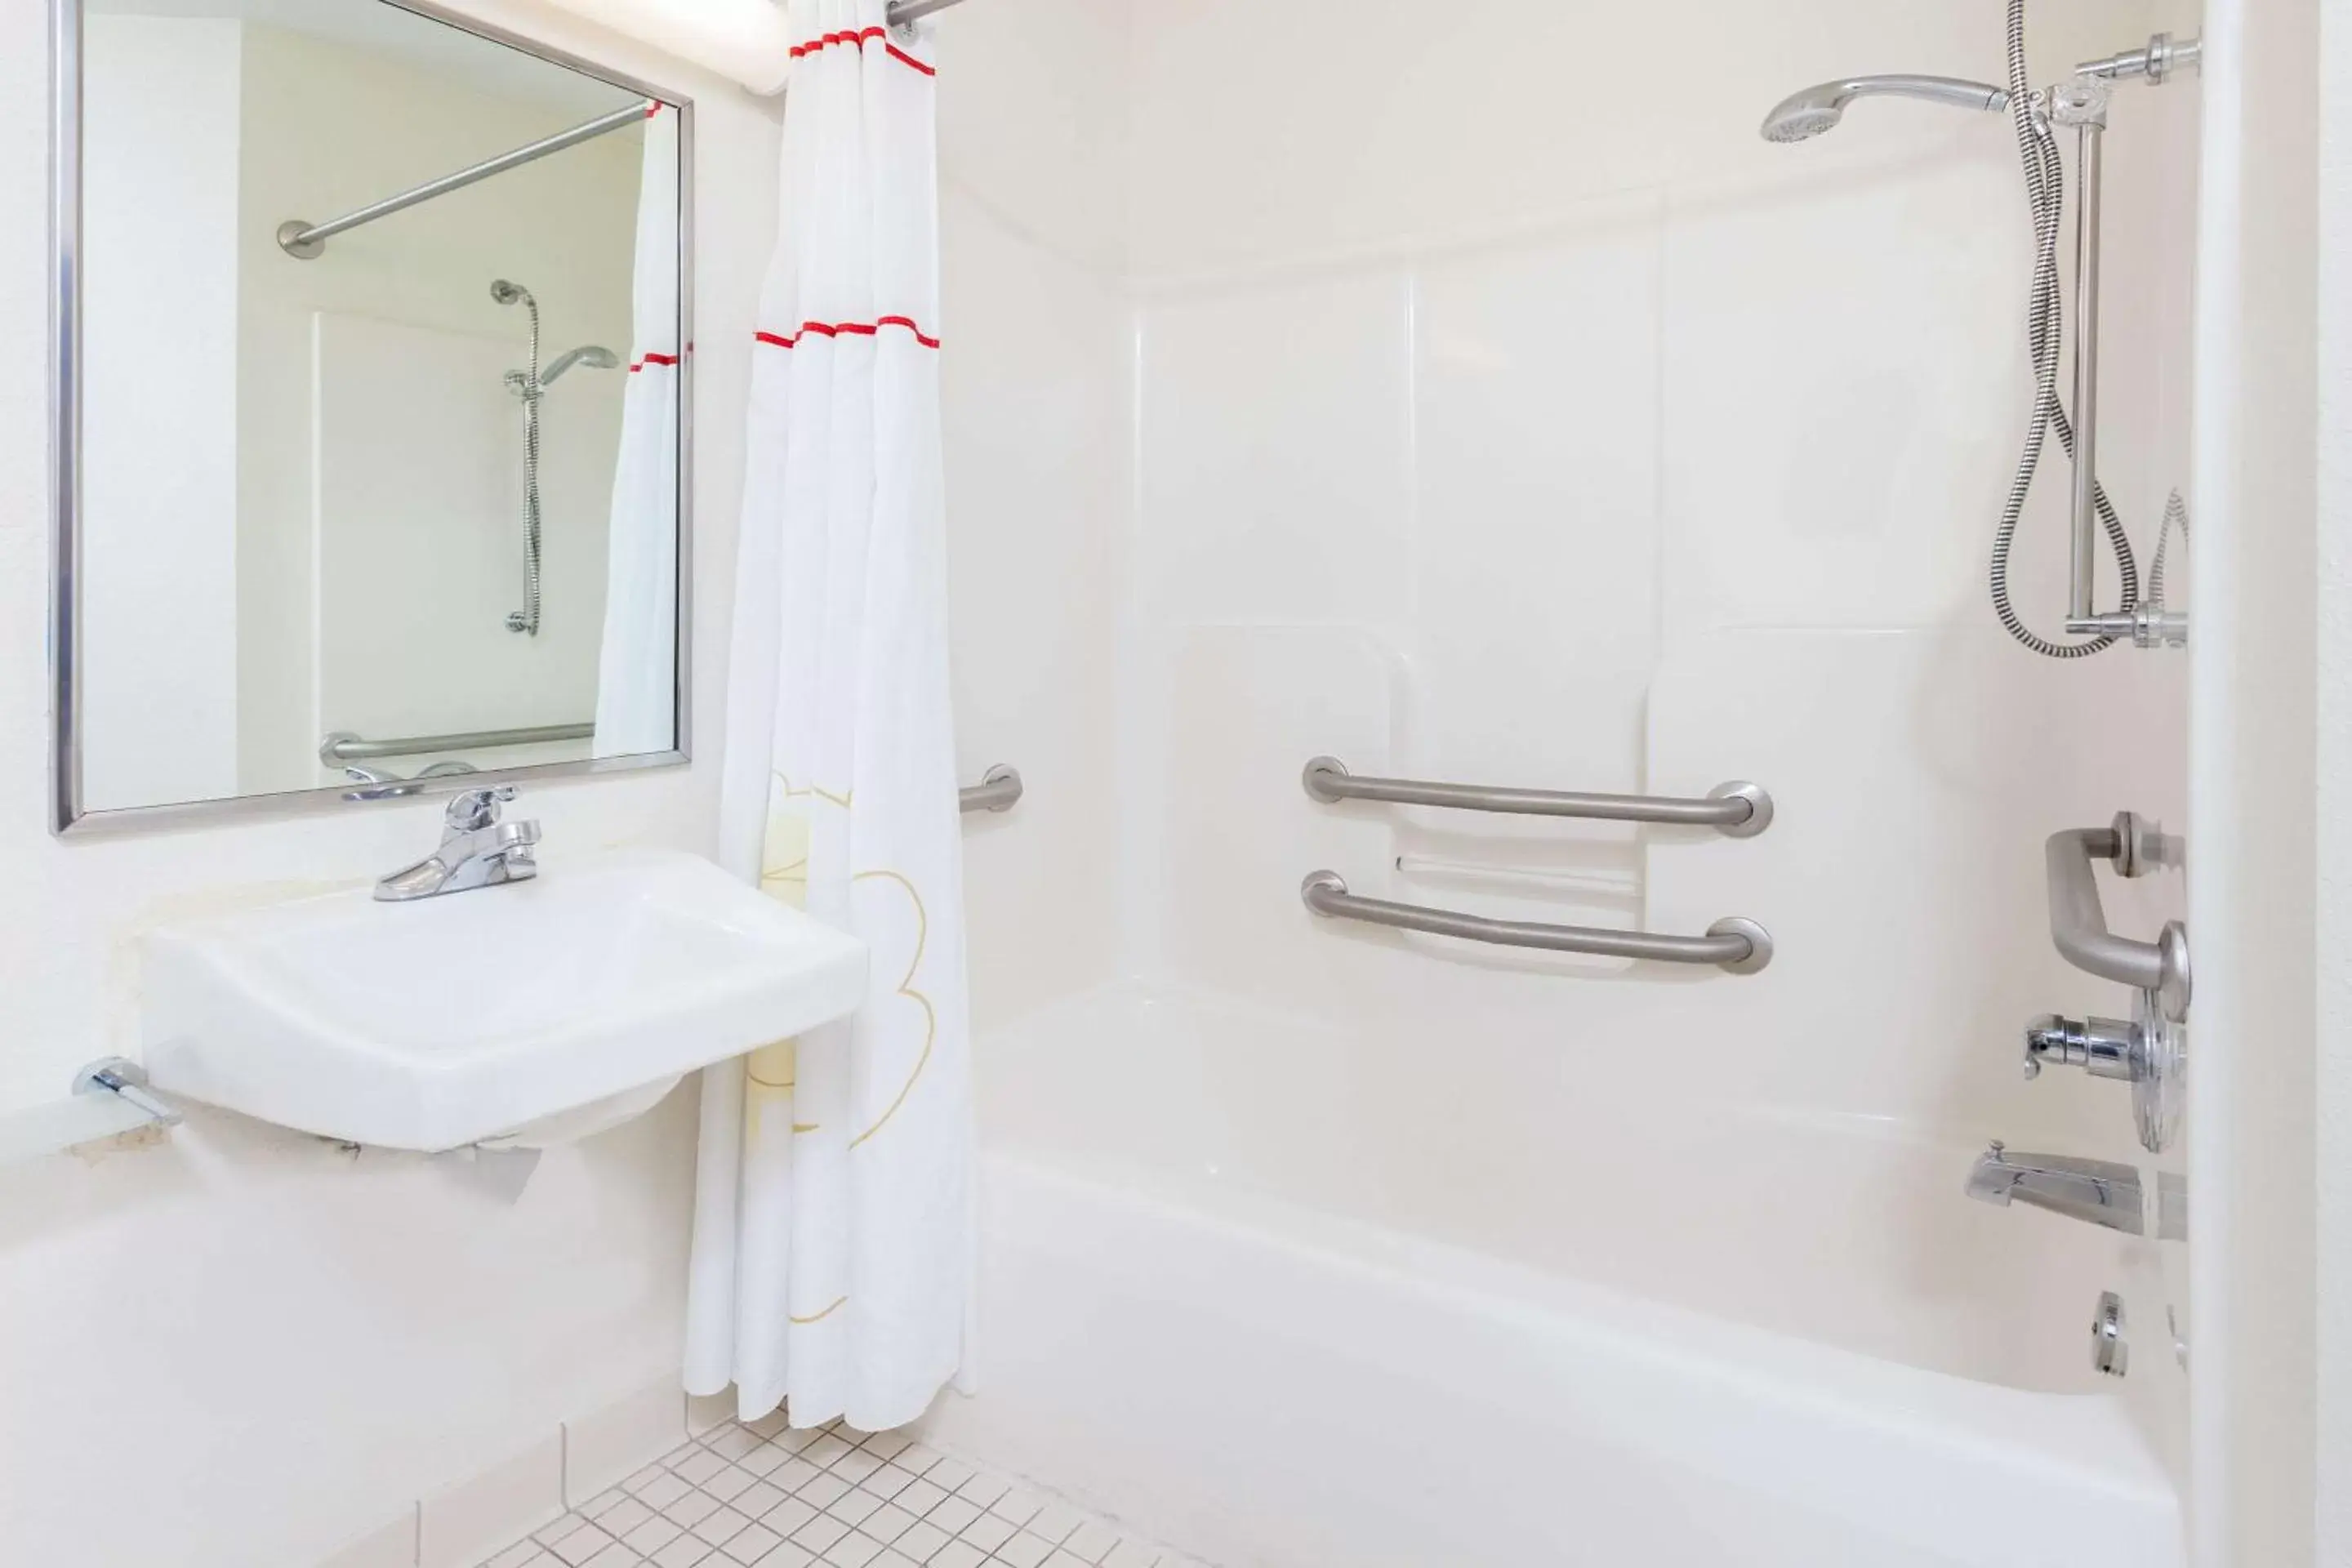 Bathroom in MainStay Suites Orlando Altamonte Springs